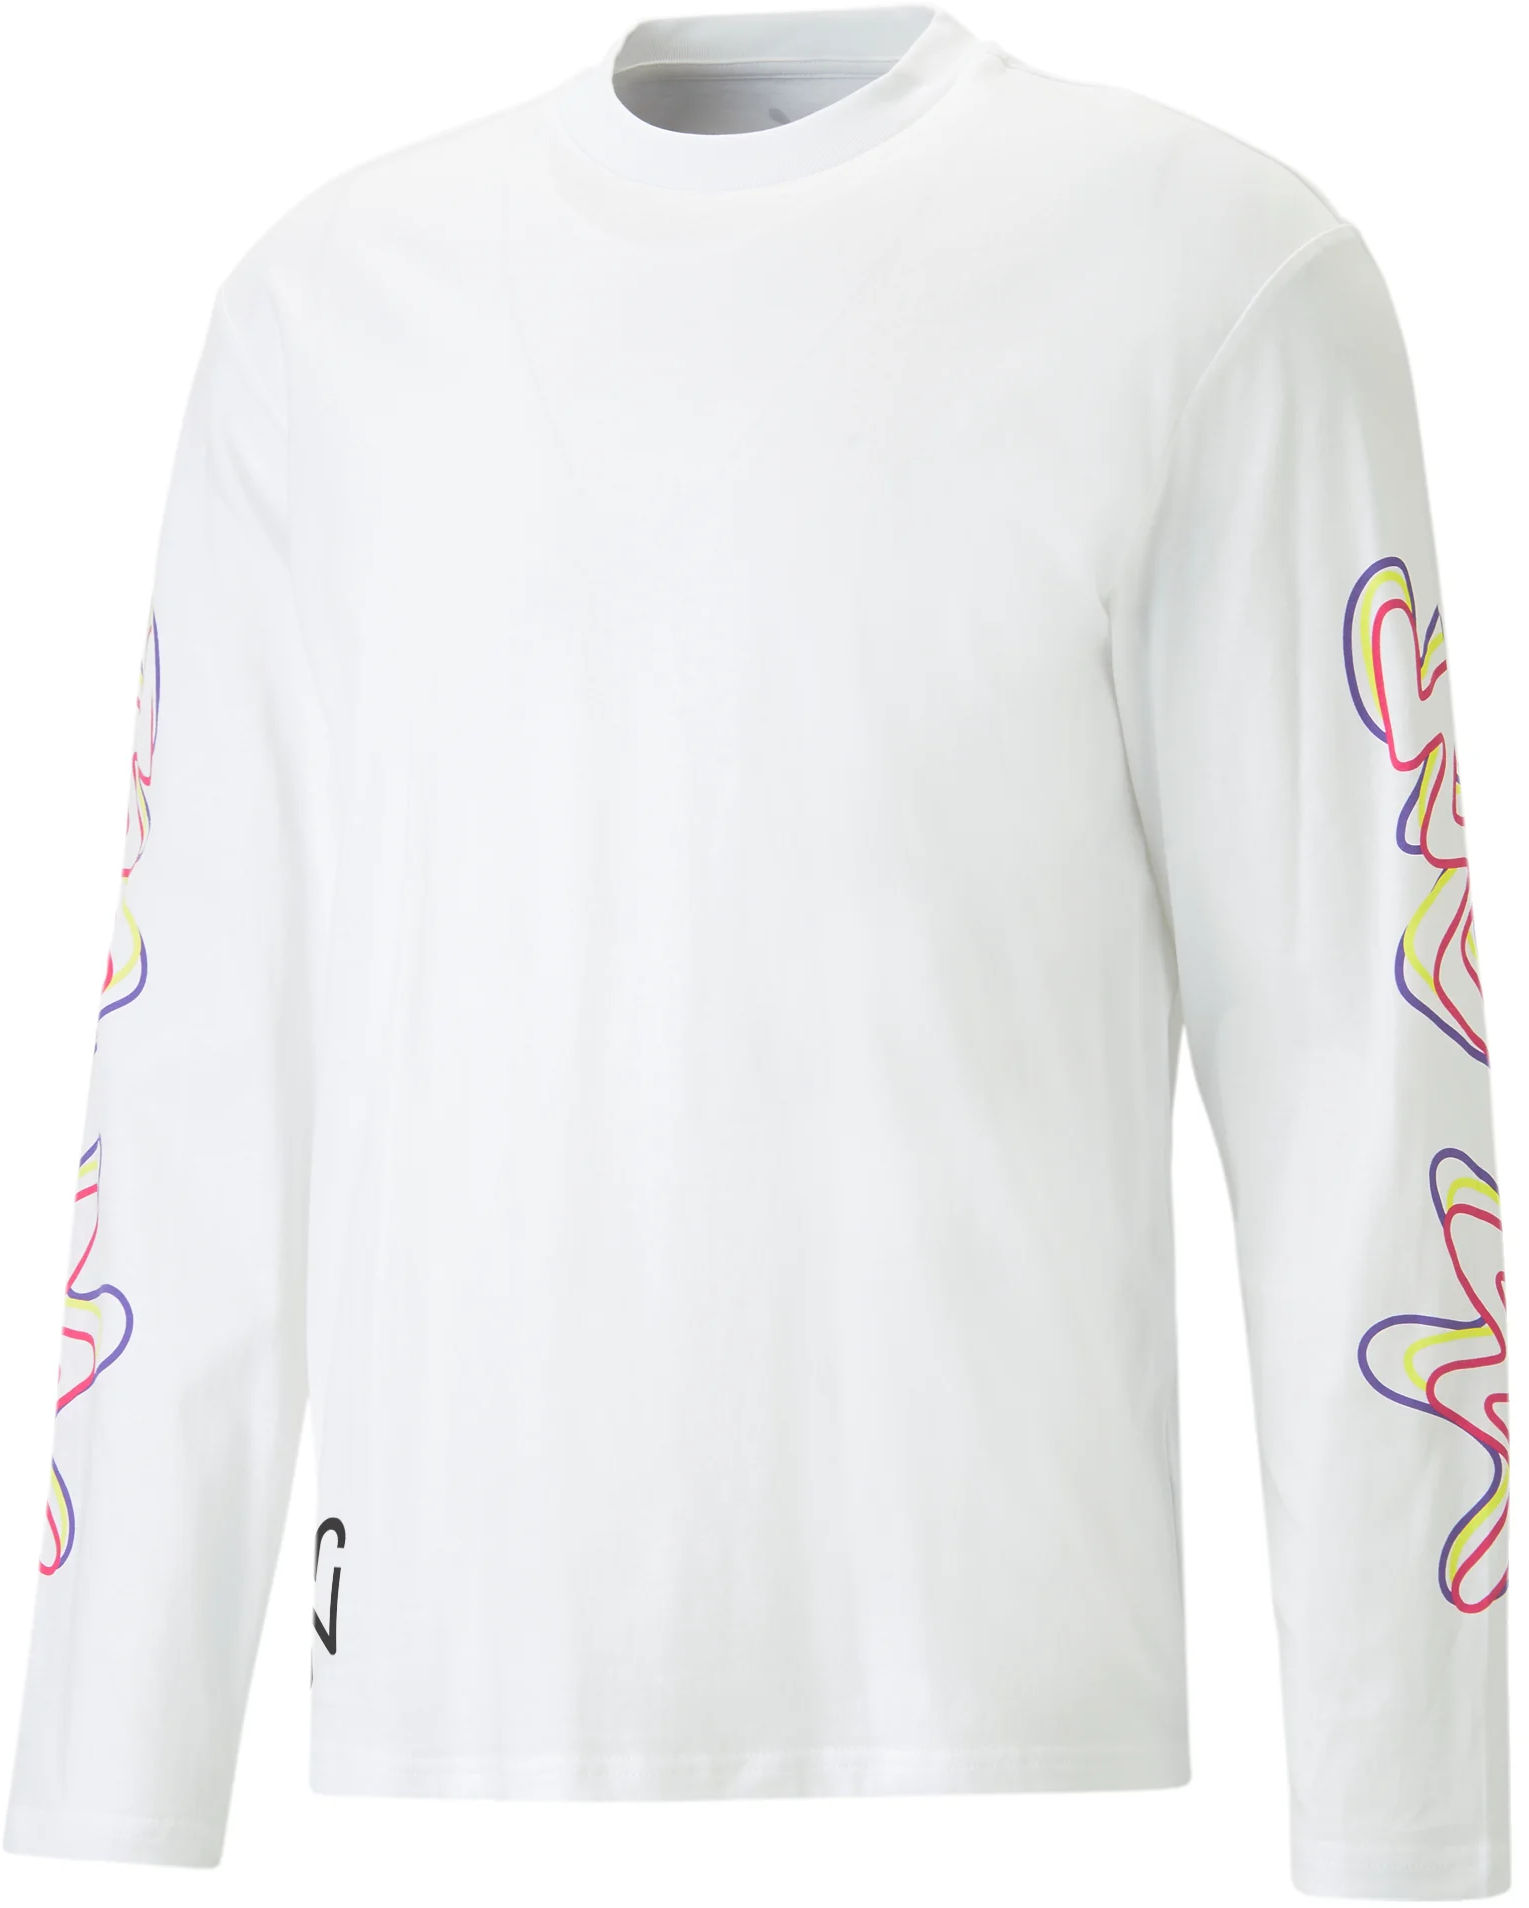 Camiseta de manga larga Puma Neymar JR Creativity Longsleeve Shirt